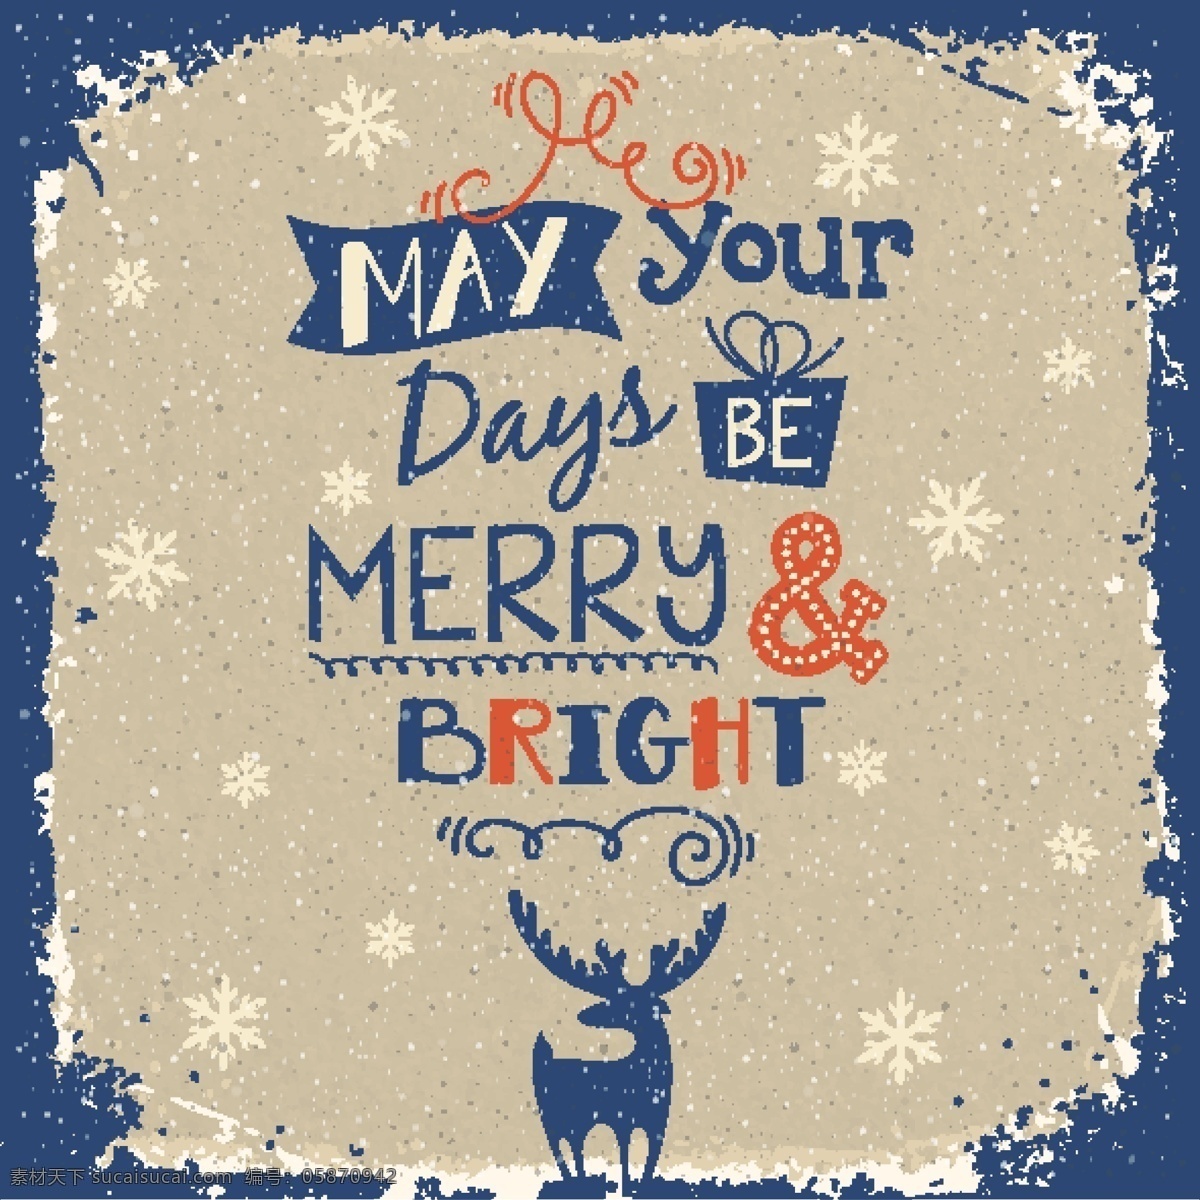 复古 圣诞 驯鹿 海报 斑驳 圣诞节 矢量图 雪花 祝福卡 节日素材